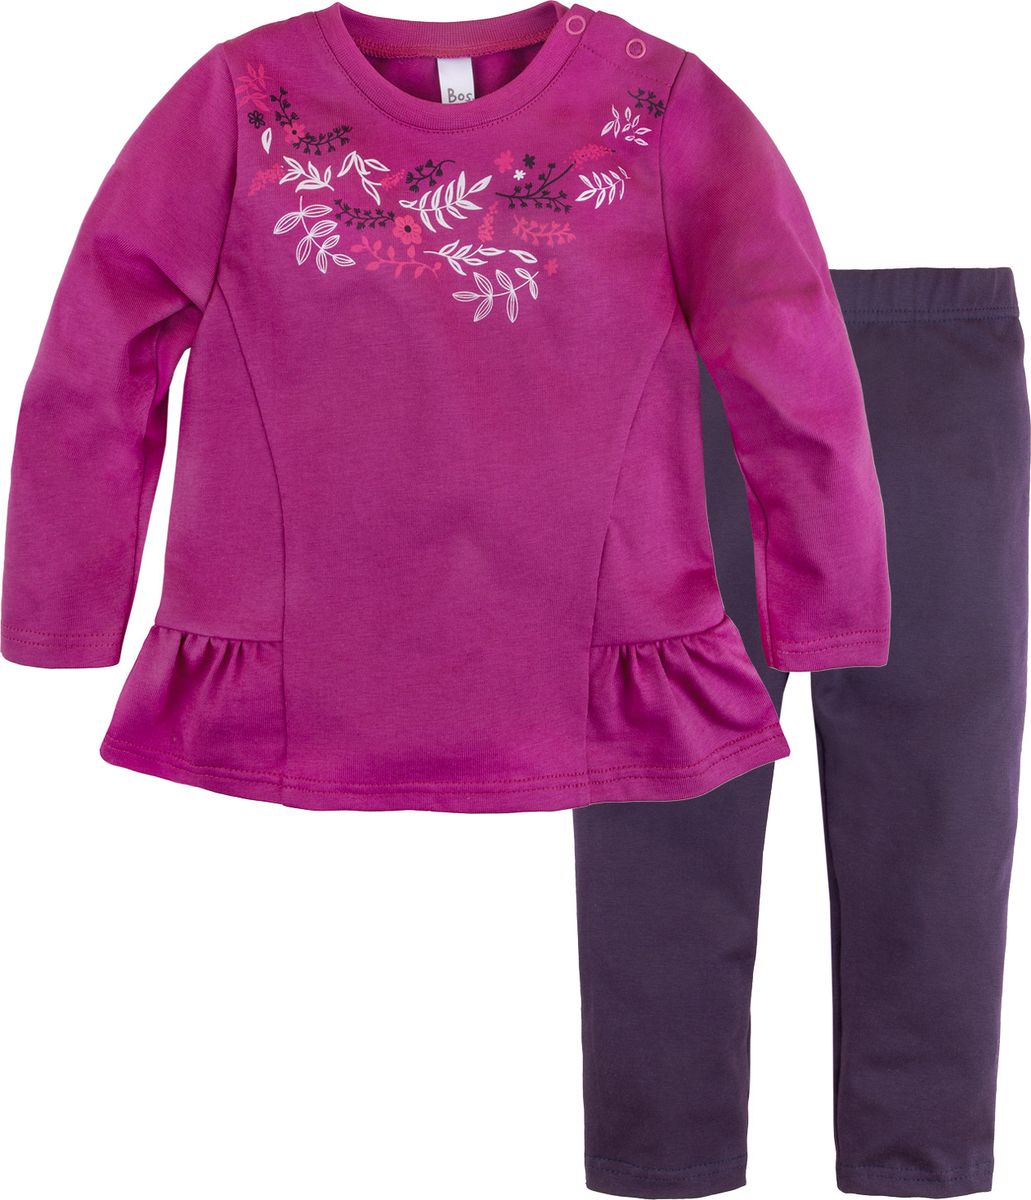 Комплект одежды для новорожденных Bossa Nova Клюква: туника и лосины, цвет: фуксия, черный. 084Б-161ф. Размер 74